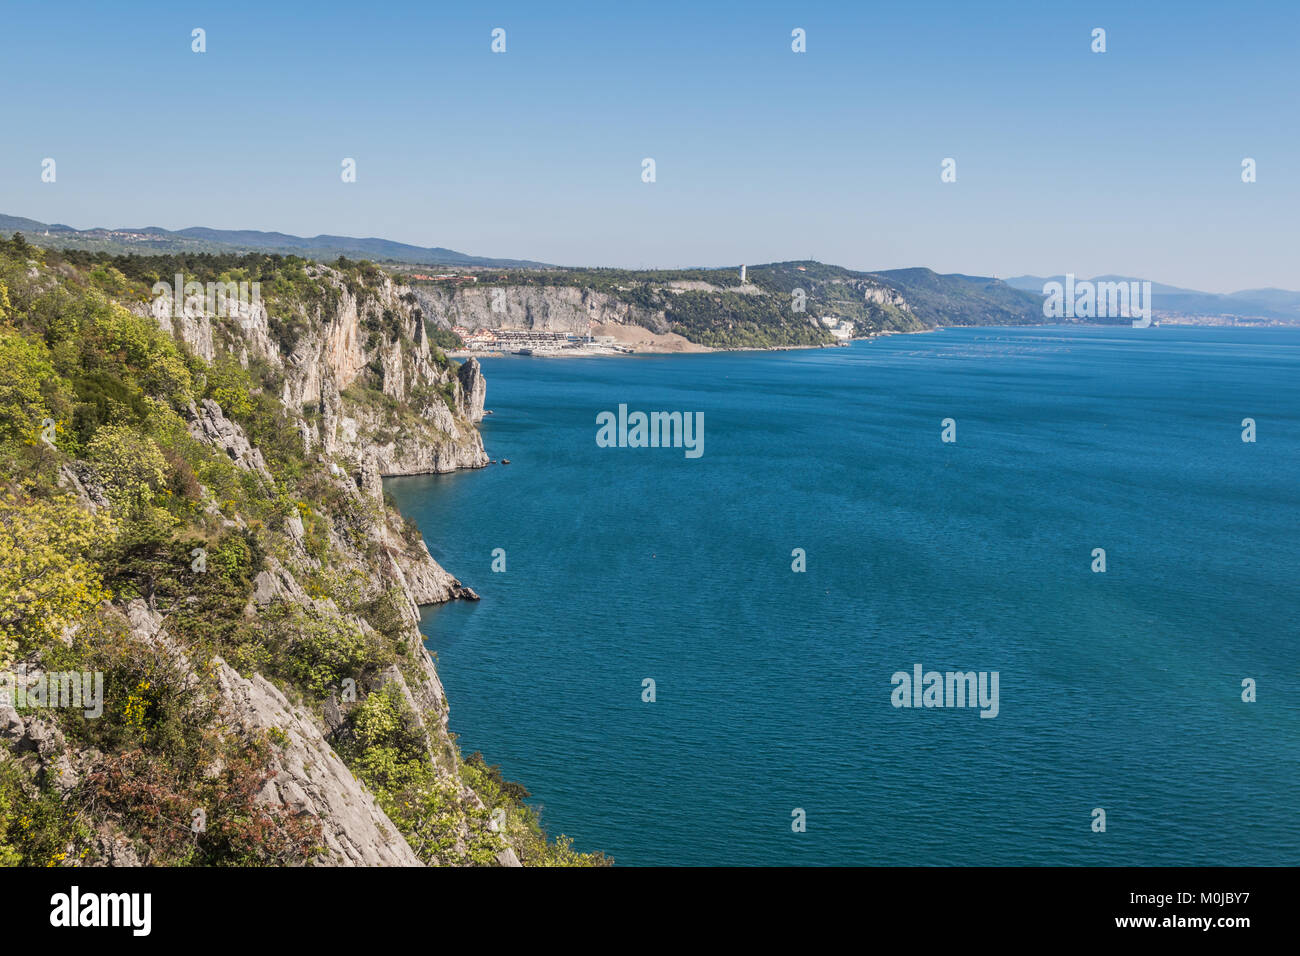 Panorama sul golfo di Trieste con scogliere tra Duino e la baia di Sistiana - Duino Aurisina, Friuli Venezia Giulia, Italia Foto Stock